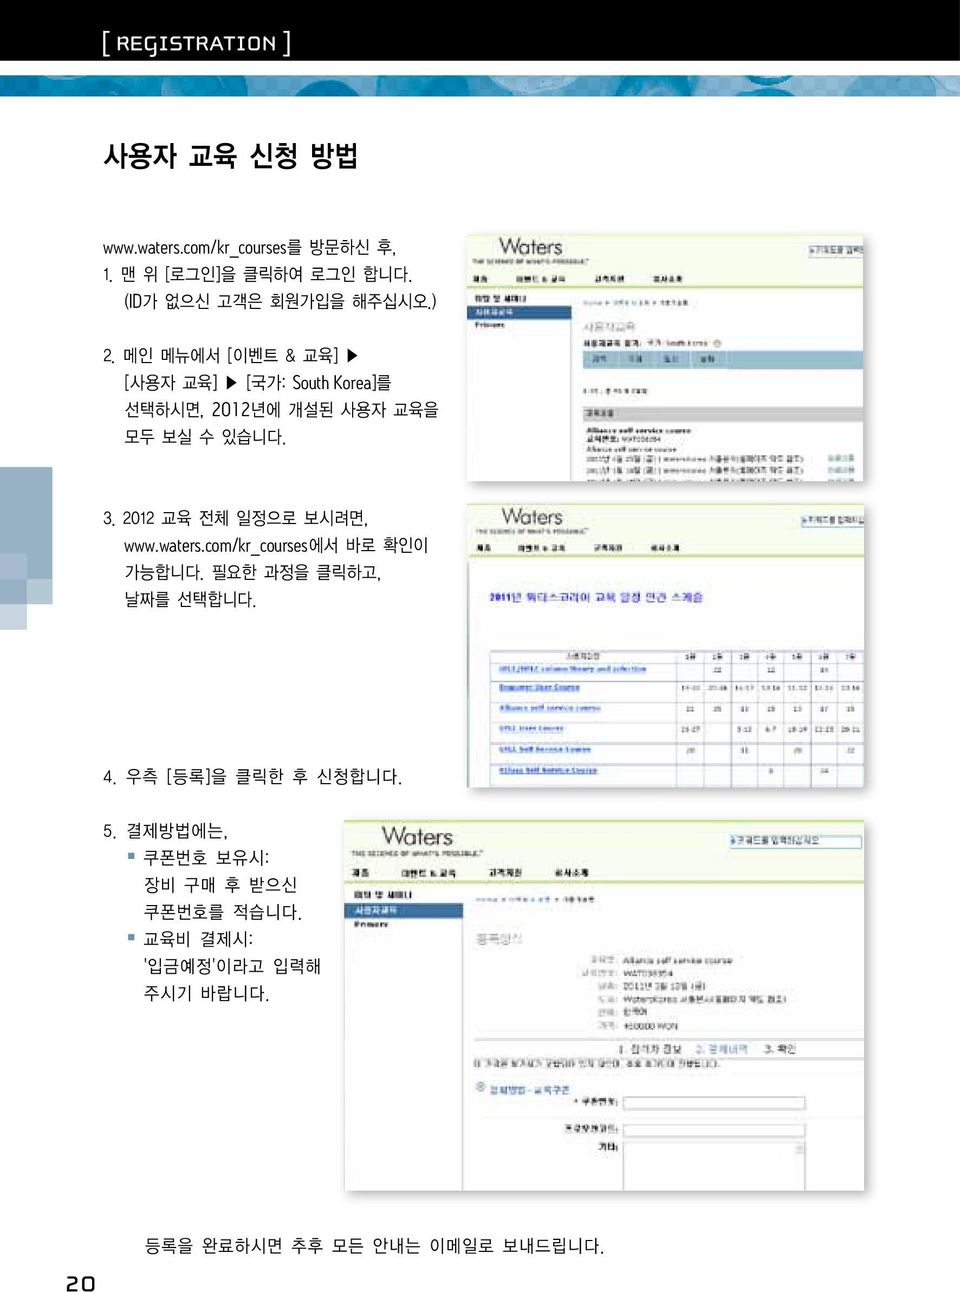 메인 메뉴에서 [이벤트 & 교육] [사용자 교육] [국가: South Korea]를 선택하시면, 2012년에 개설된 사용자 교육을 모두 보실 수 있습니다. 3.